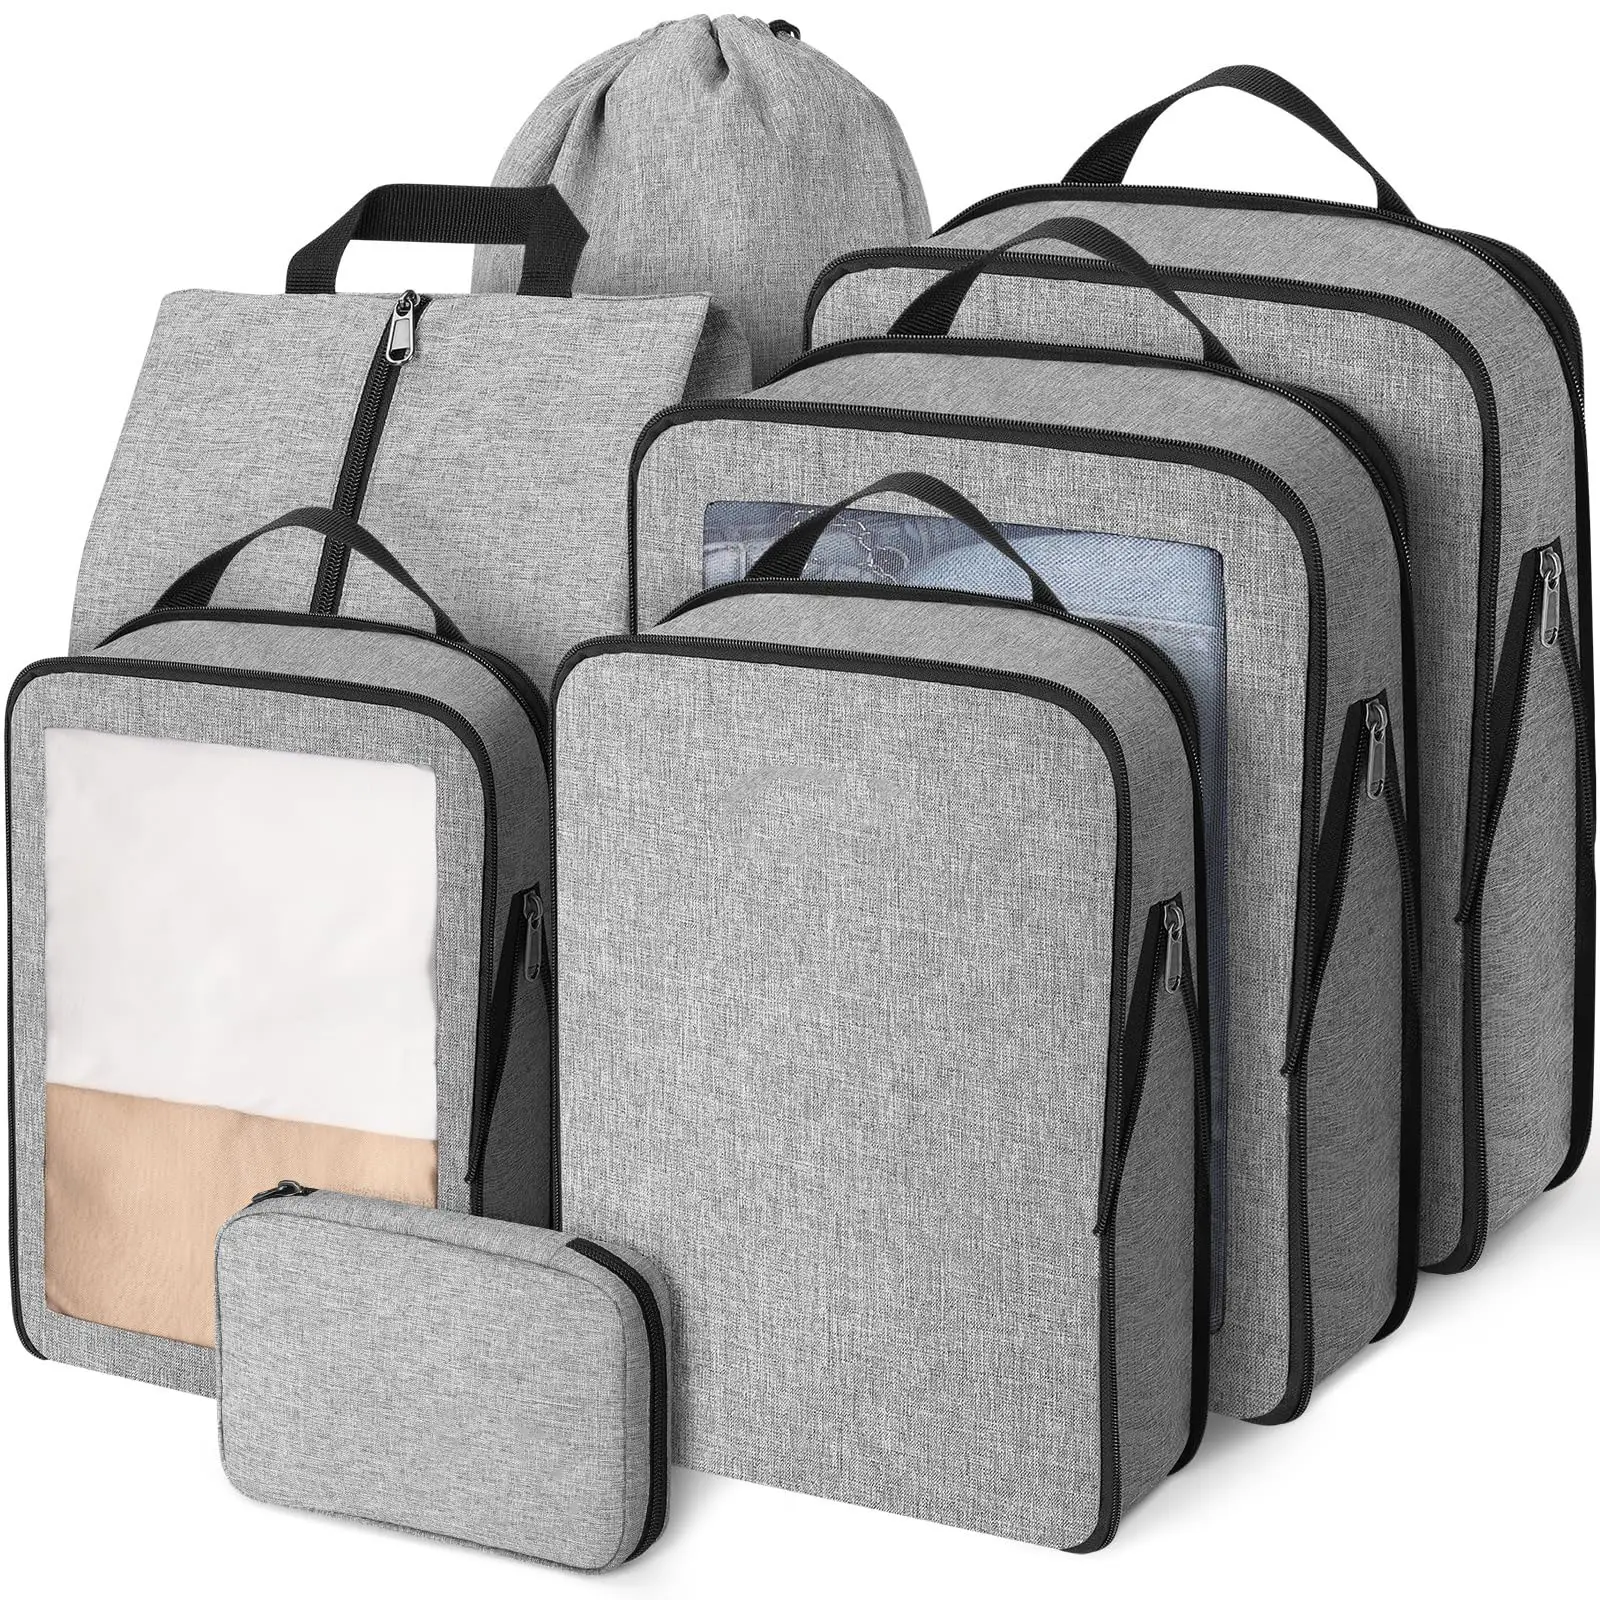 Benutzer definierte 7 Stück Heavy Duty Baggage Organizer Taschen Reise verpackungs würfel Tasche Reise veranstalter Kompression verpackungs würfel